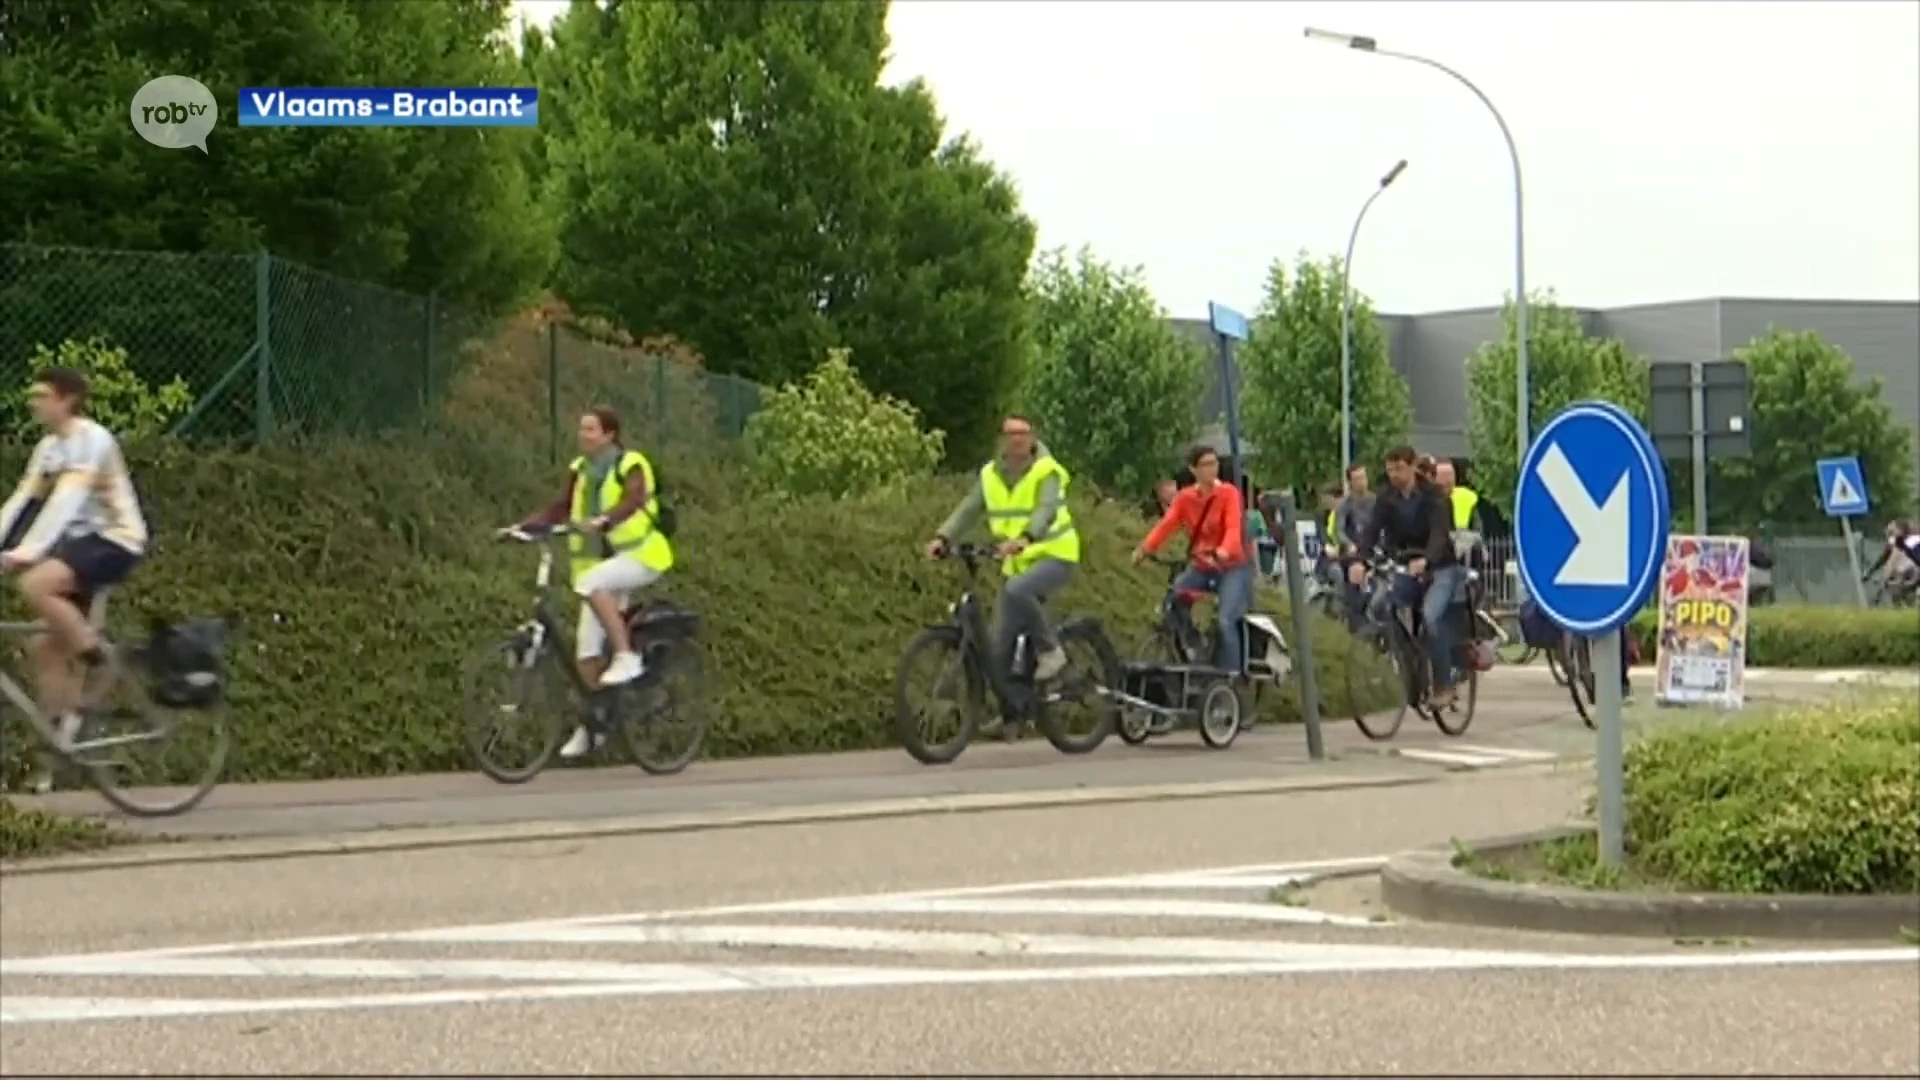 Eén derde van de Vlaams-Brabanders gaat met fiets naar het werk